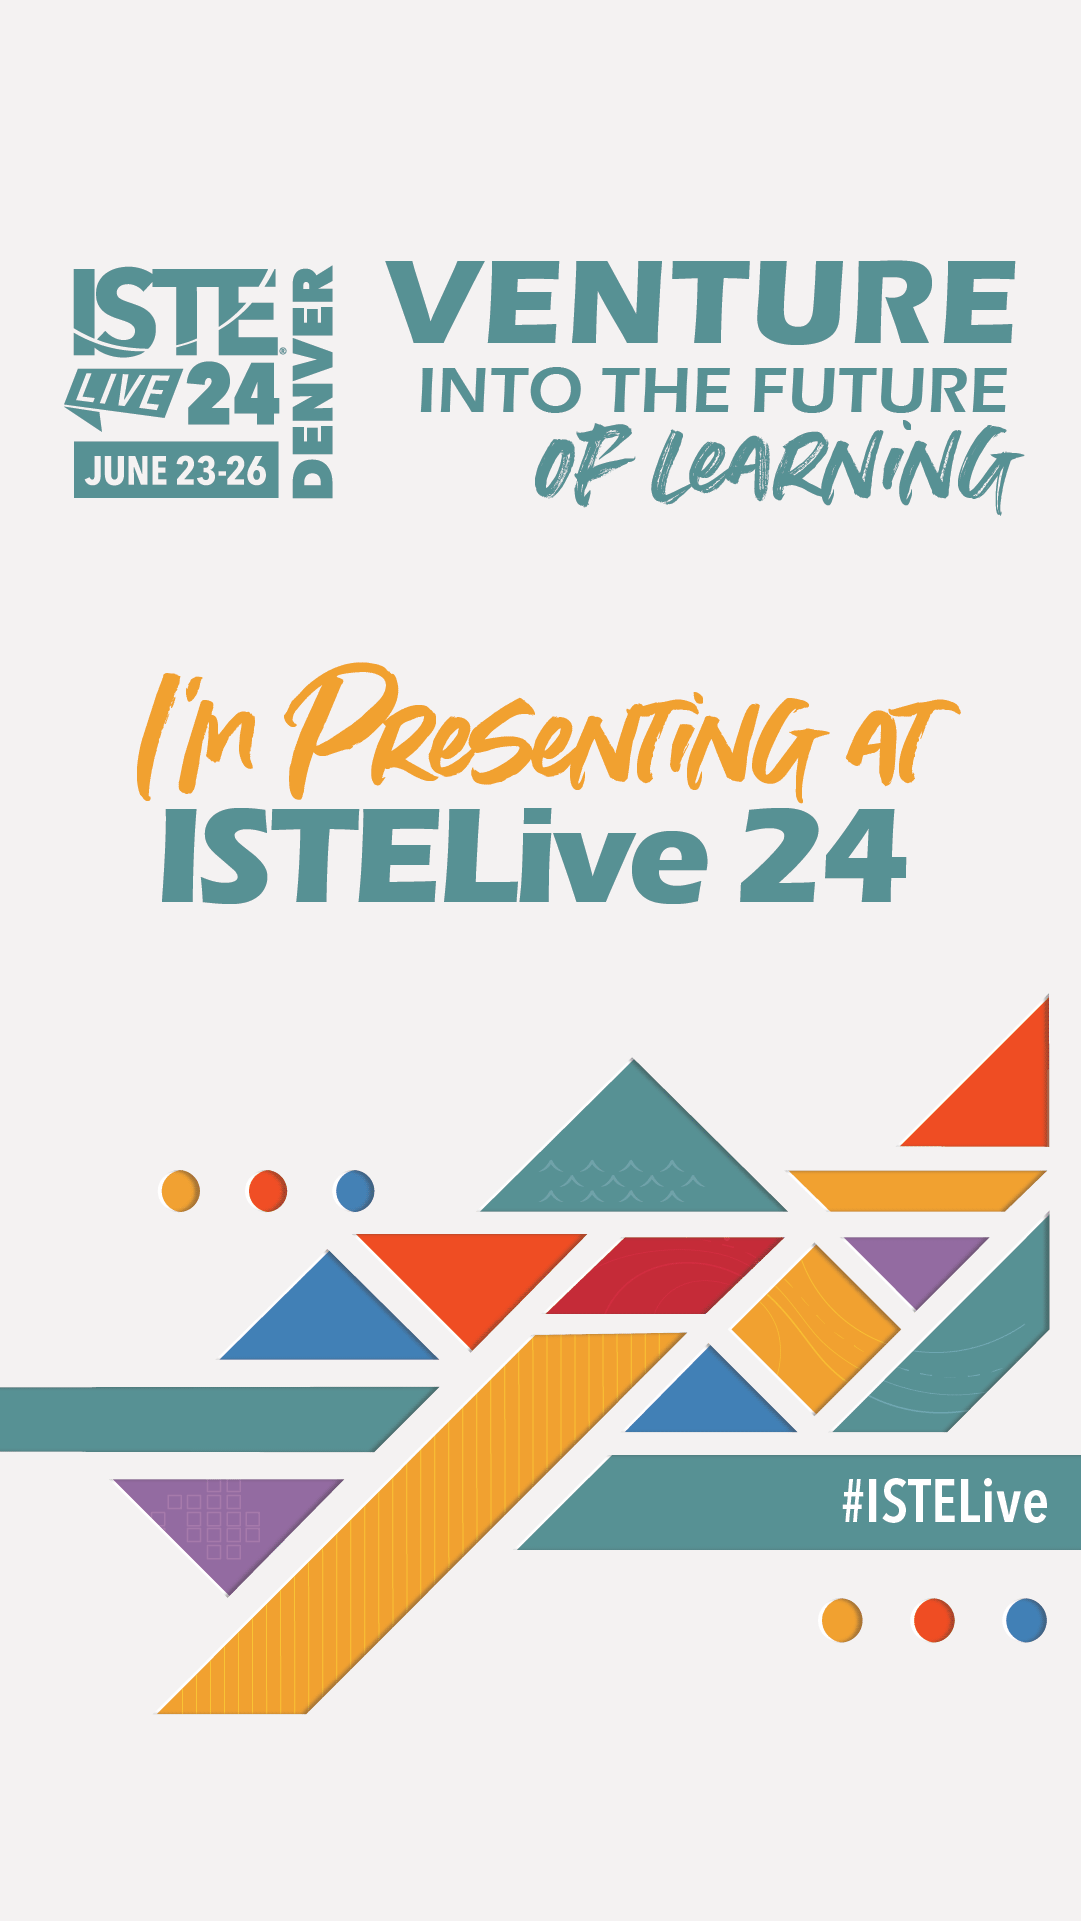 ISTELive 24 Edtech conference June 2326 Denver